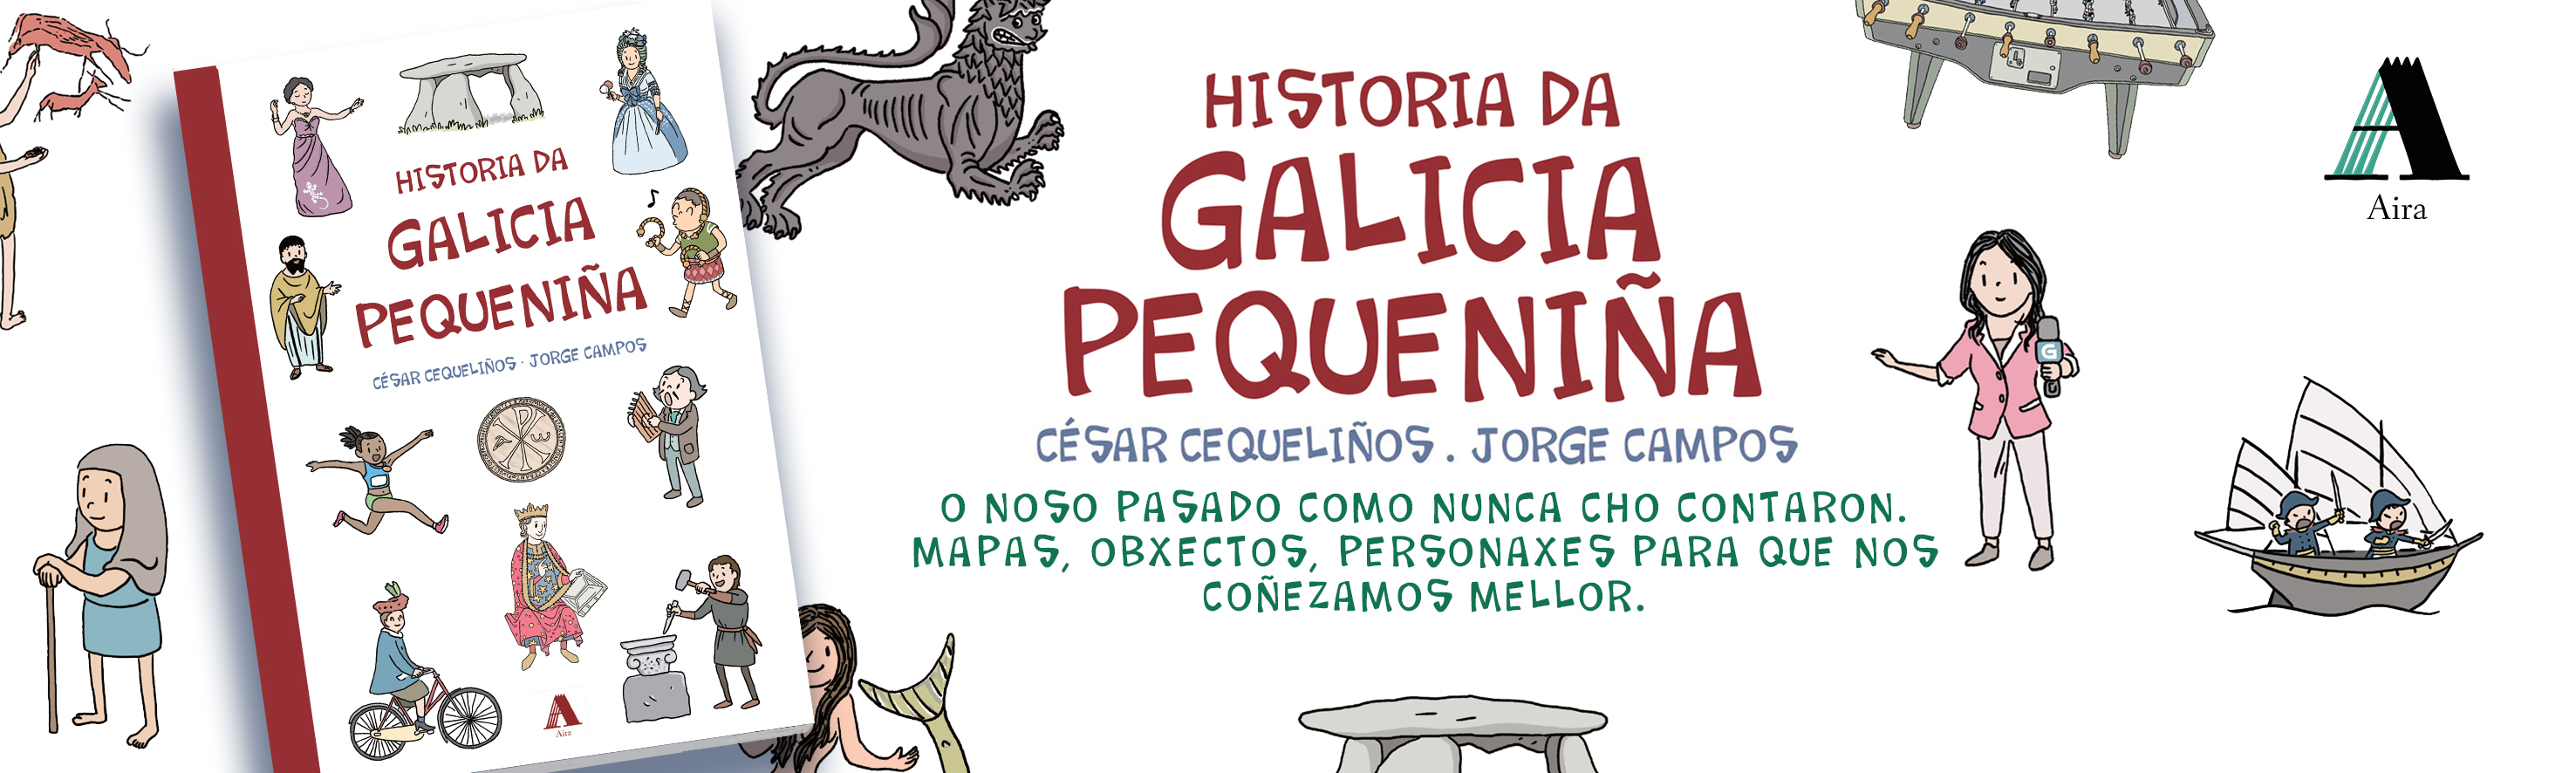 Historia da Galicia pequeniña